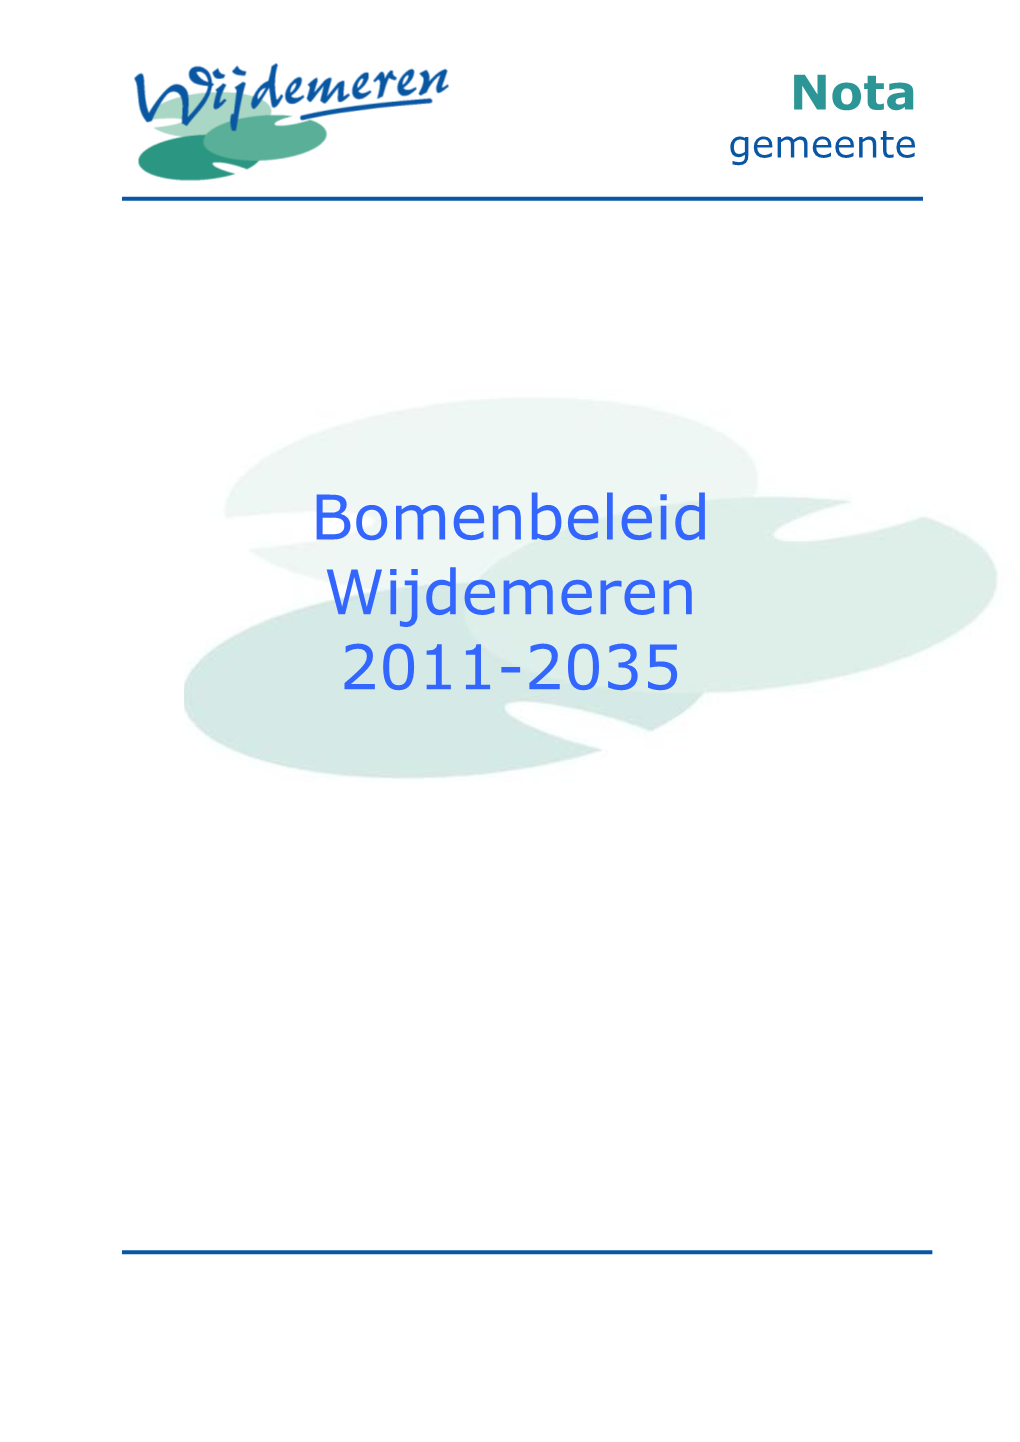 Bomenbeleid Wijdemeren 2011-2035